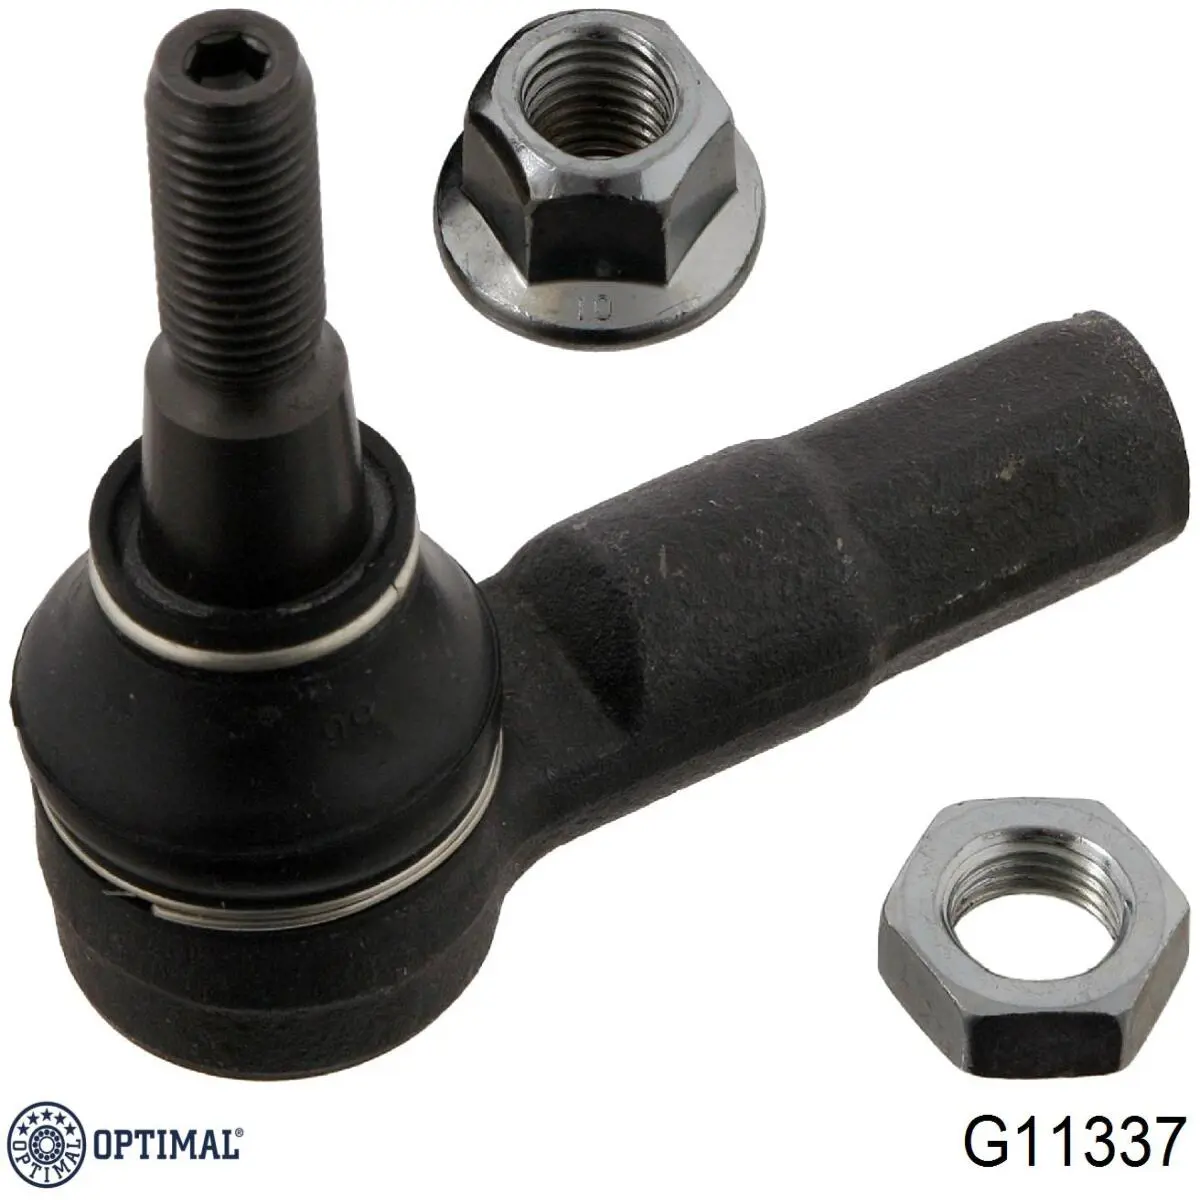 G11337 Optimal rótula barra de acoplamiento exterior